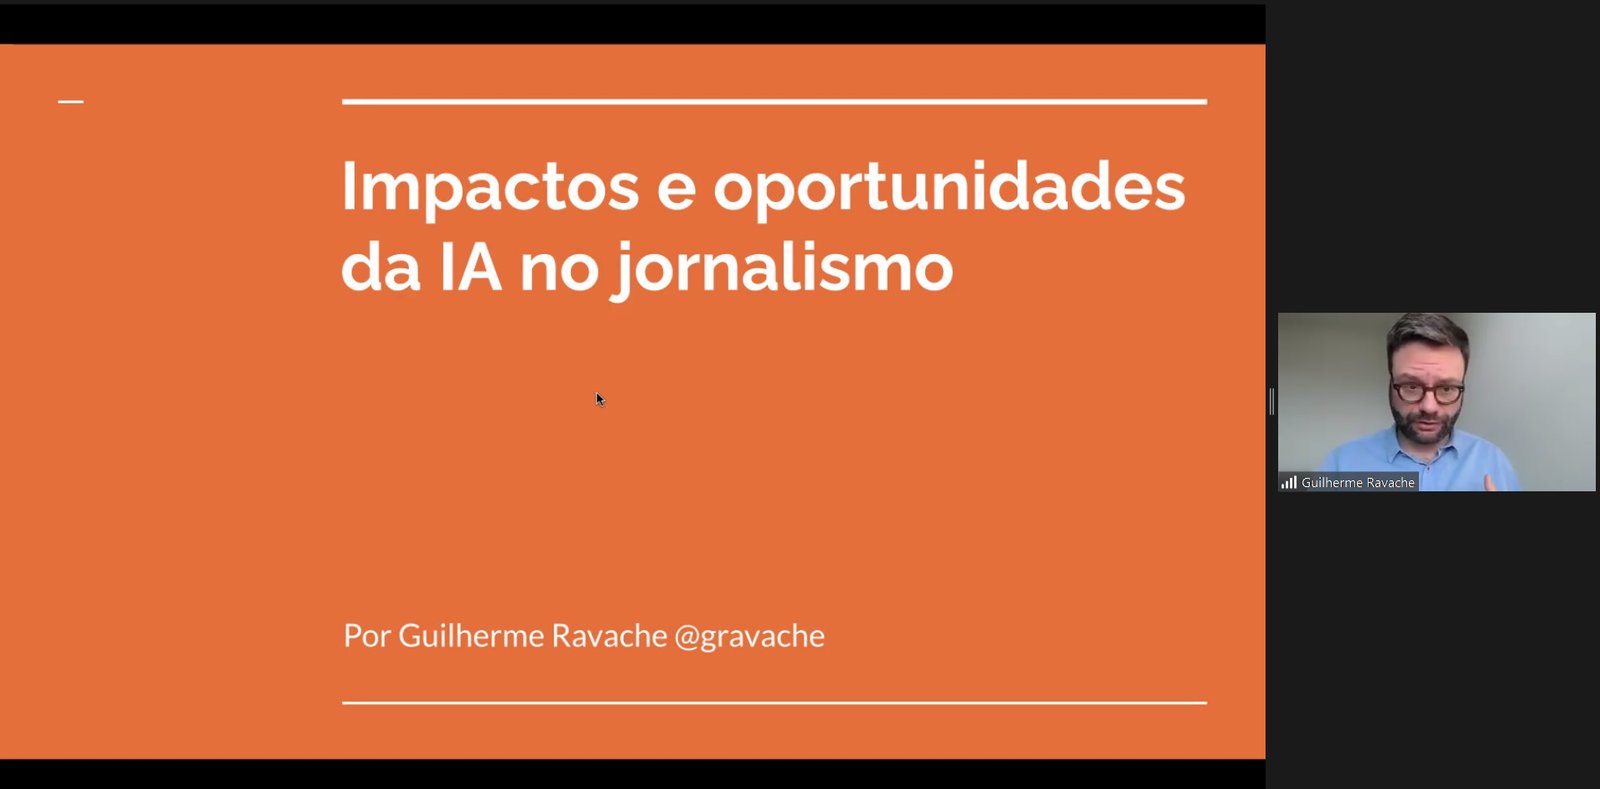 Tela de apresentação no Zoom mostra powerpoint em laranja com letras em branco falando sobre impactos e oportunidades da IA no jornalismo com Guilherme Ravache